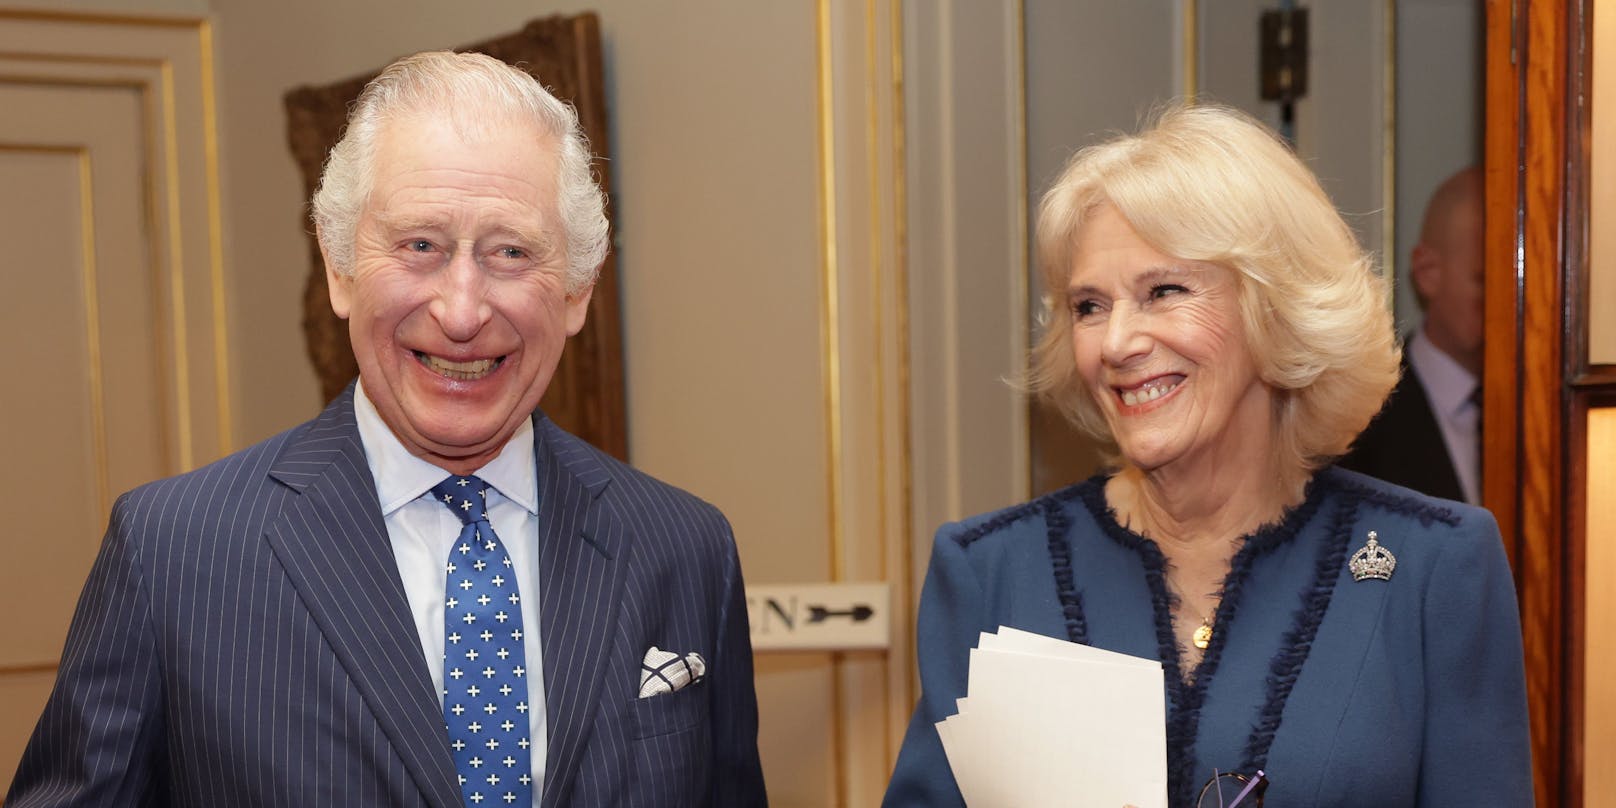 König Charles III. und Ehefrau Camilla stehen unter Beschuss.